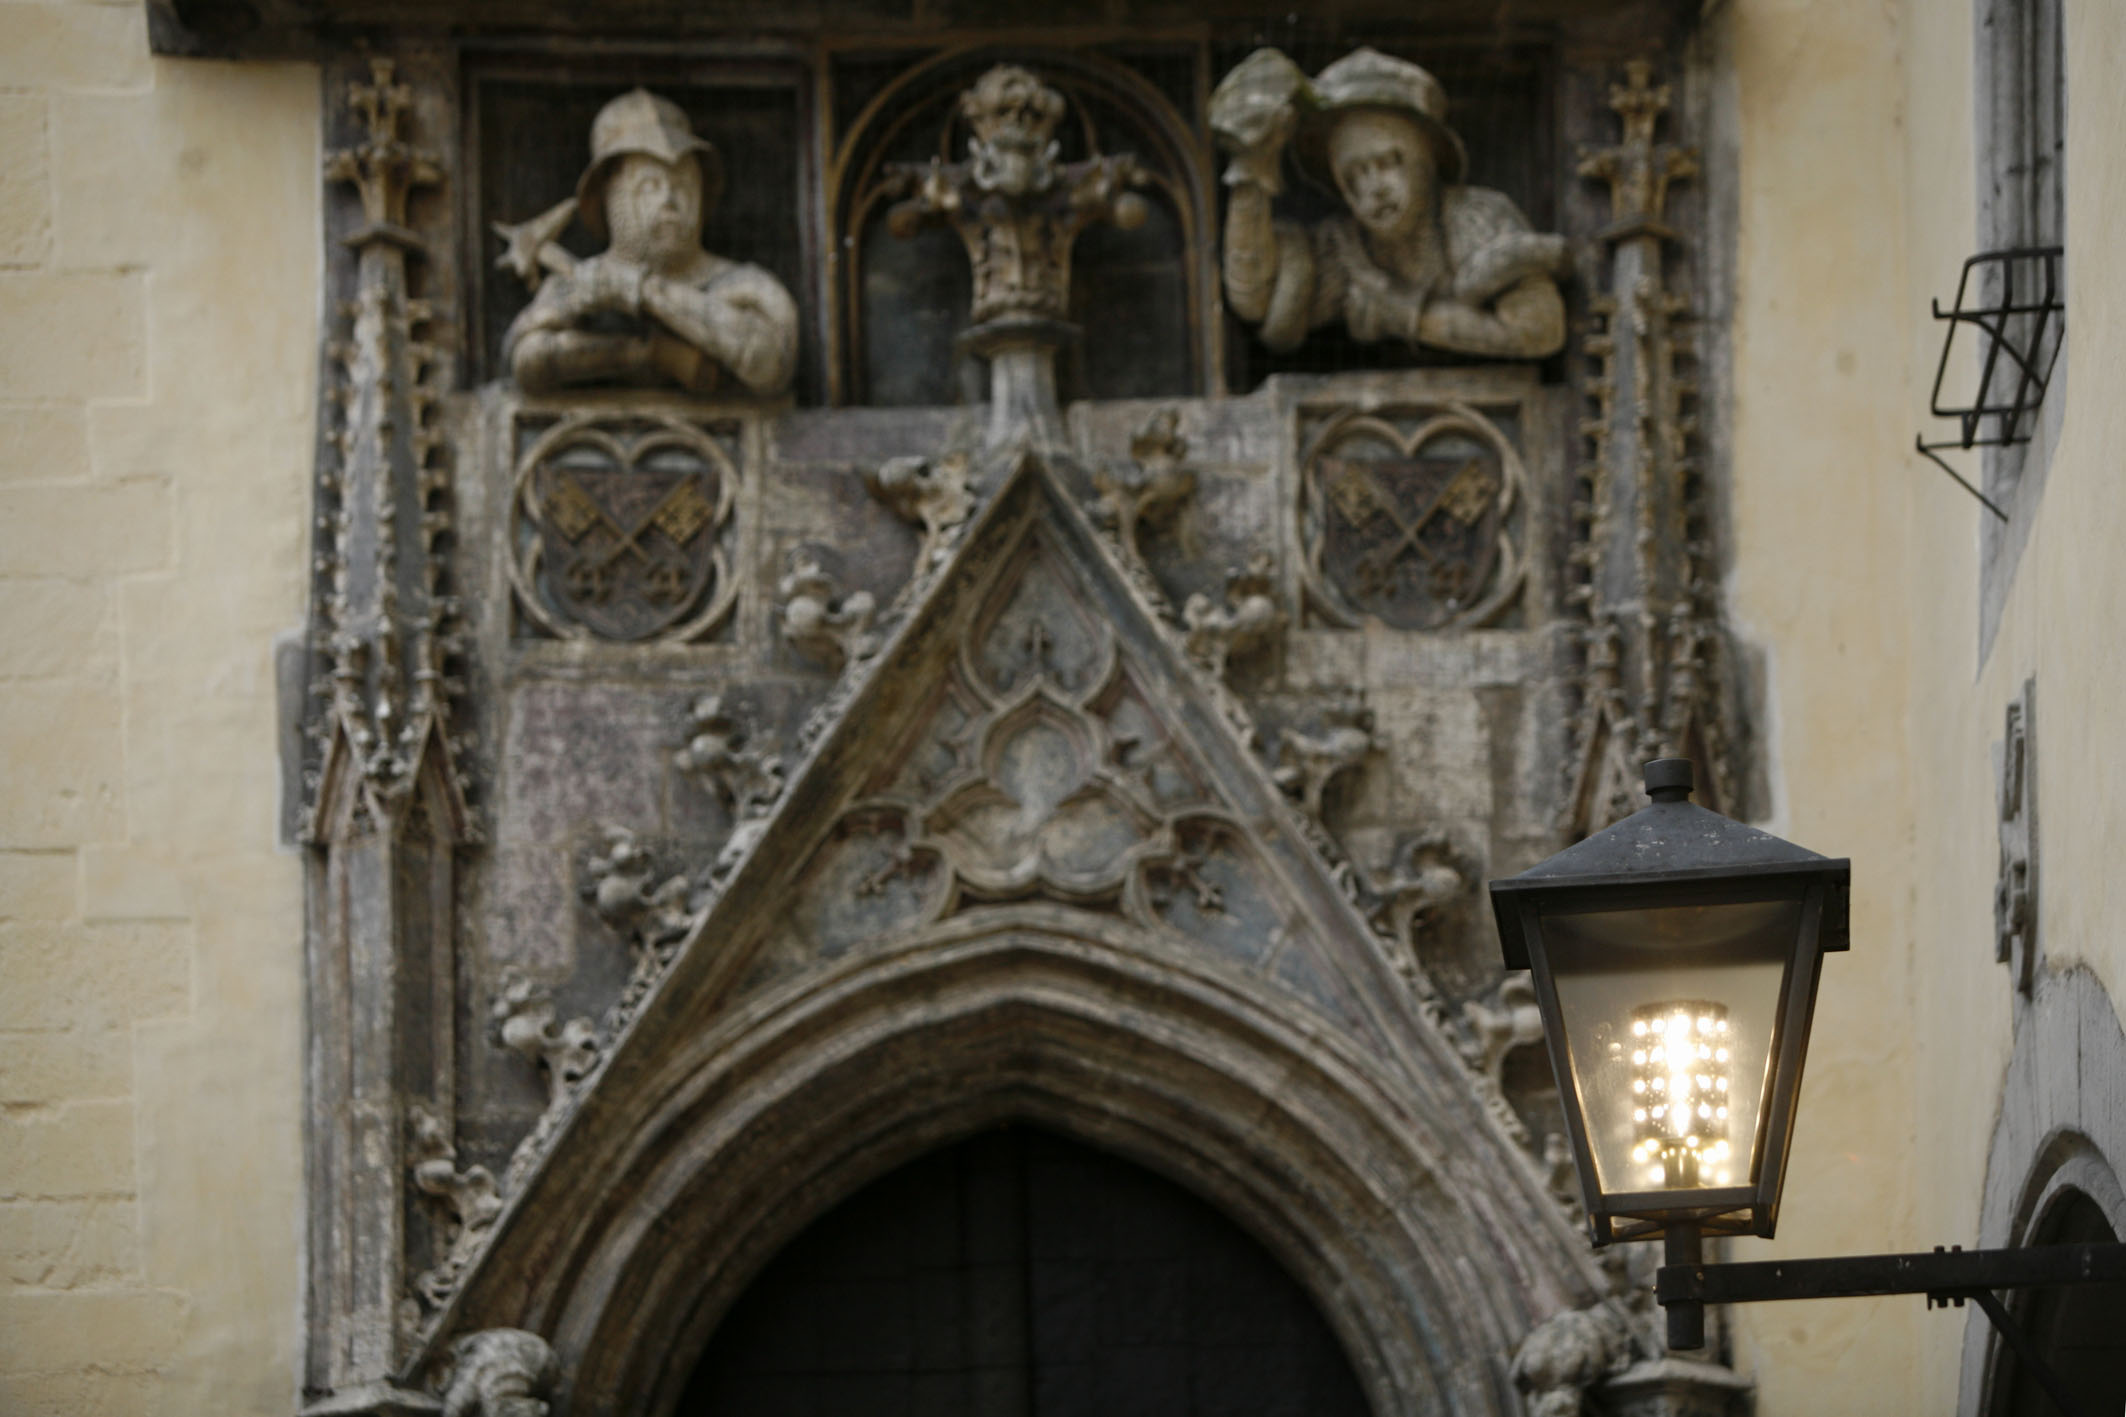 Portal eines alten Bauwerkes mit Figuren, davor eine Straßenlaterne im nostalgisch altem Design, aber mit modernen LED-Lampen